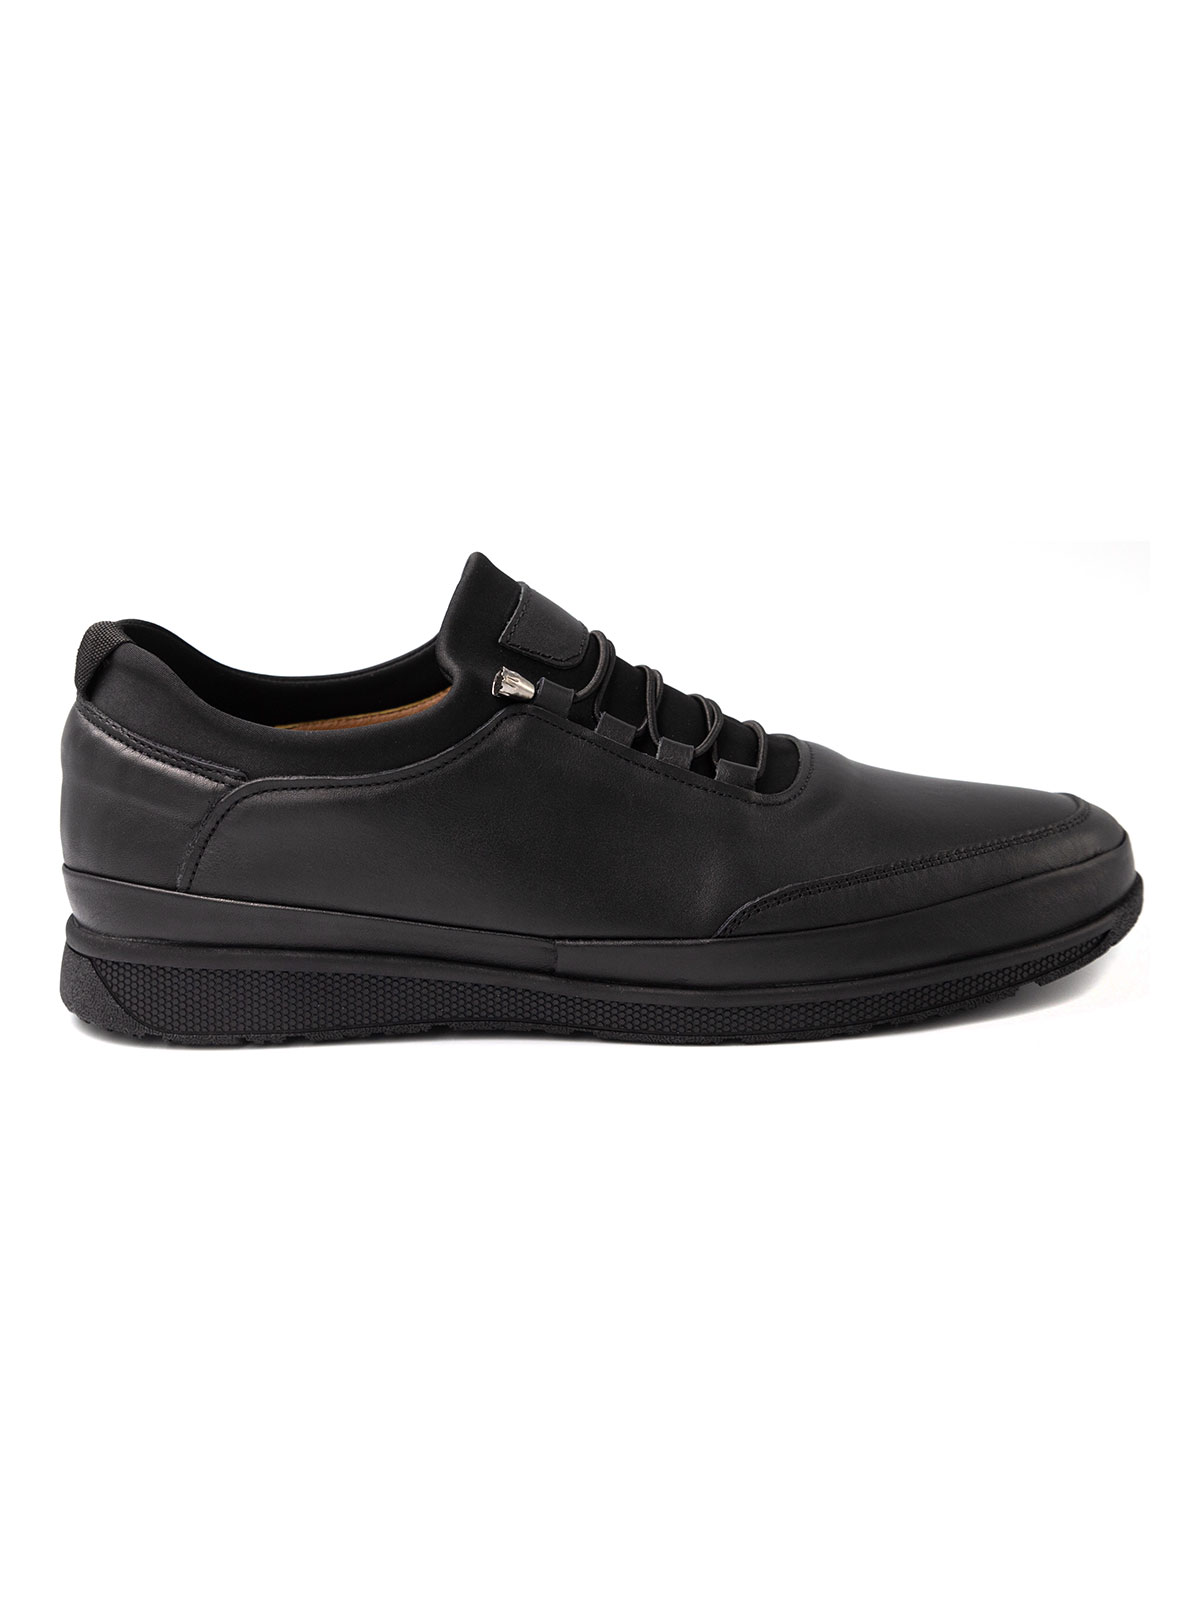 Μαύρα δερμάτινα παπούτσια με ελαστικά κο - 81095 - € 41.62 img3